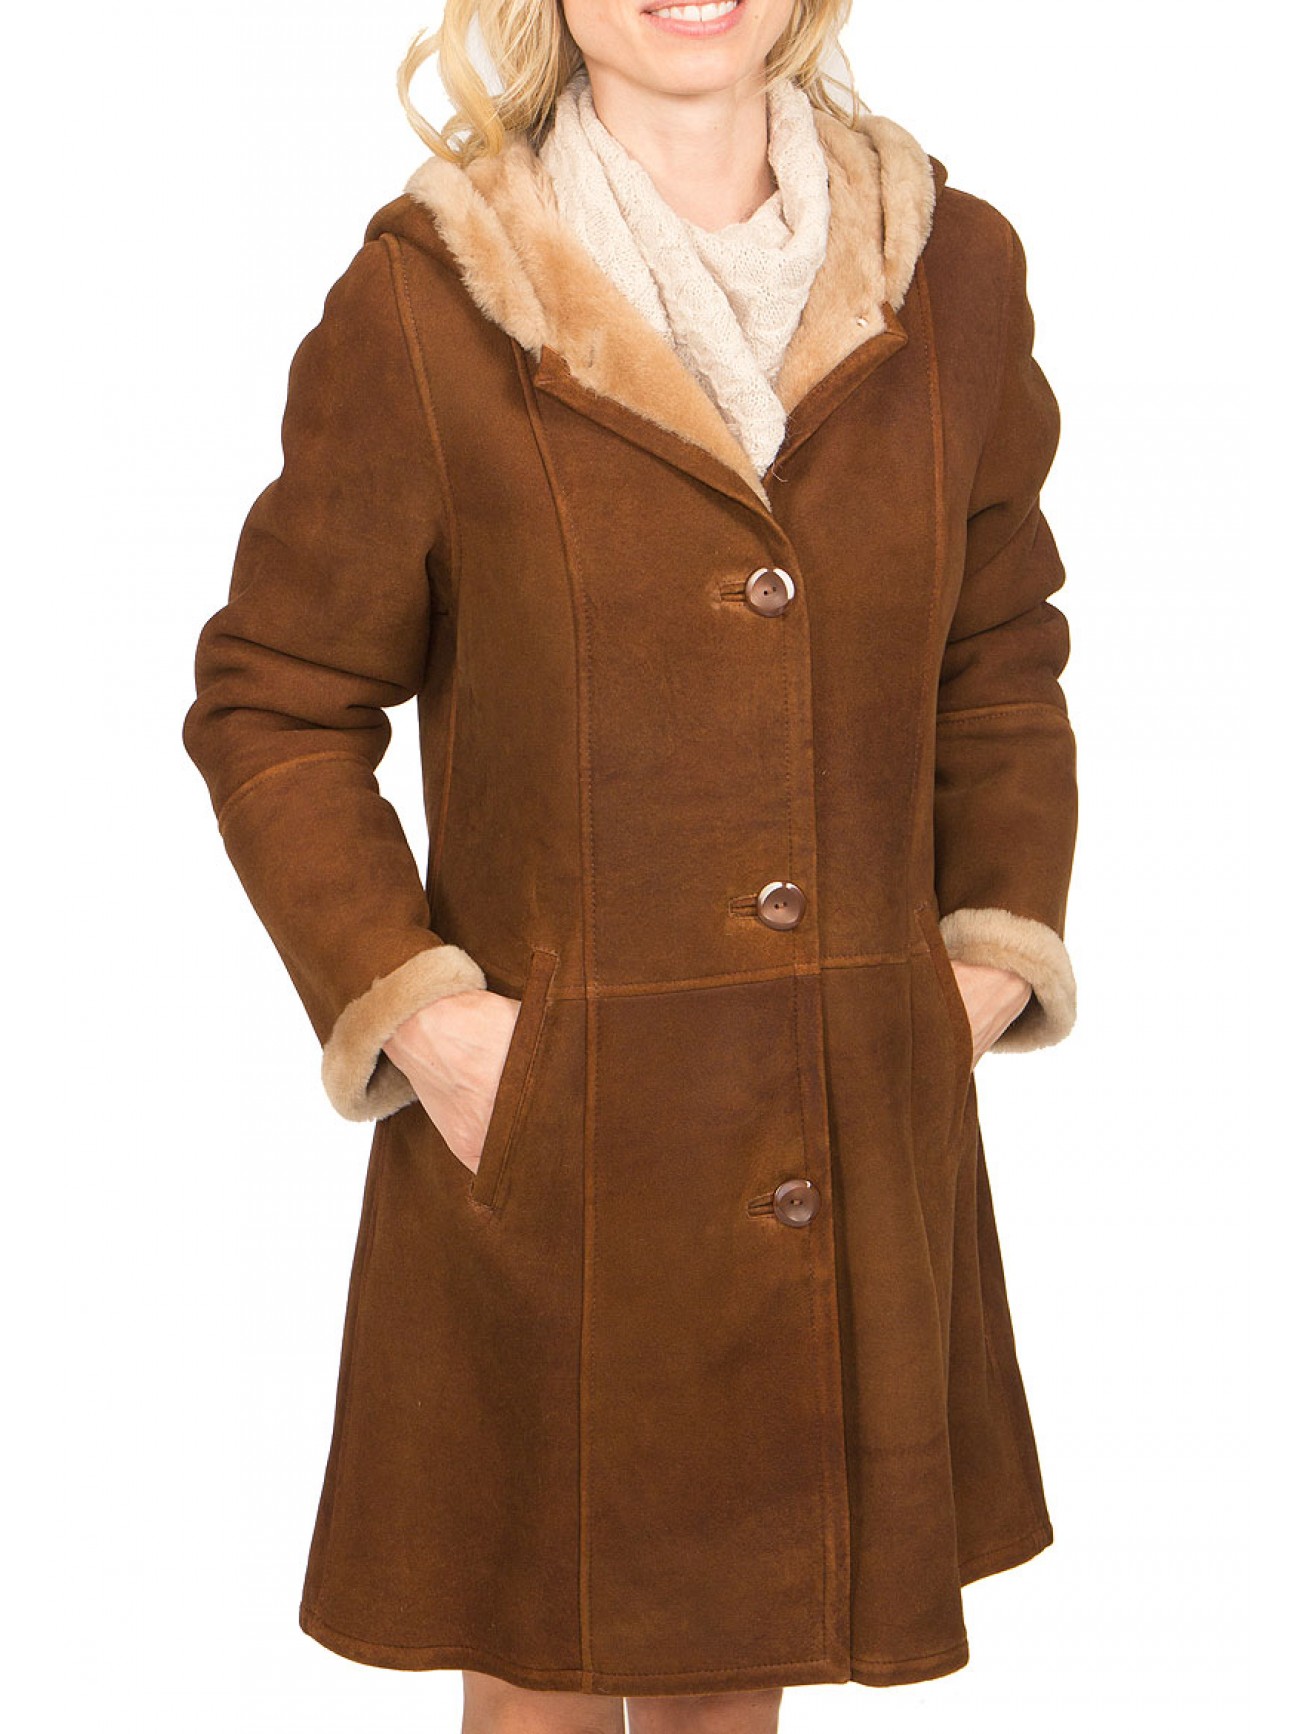 Shearling coats and shearling jackets